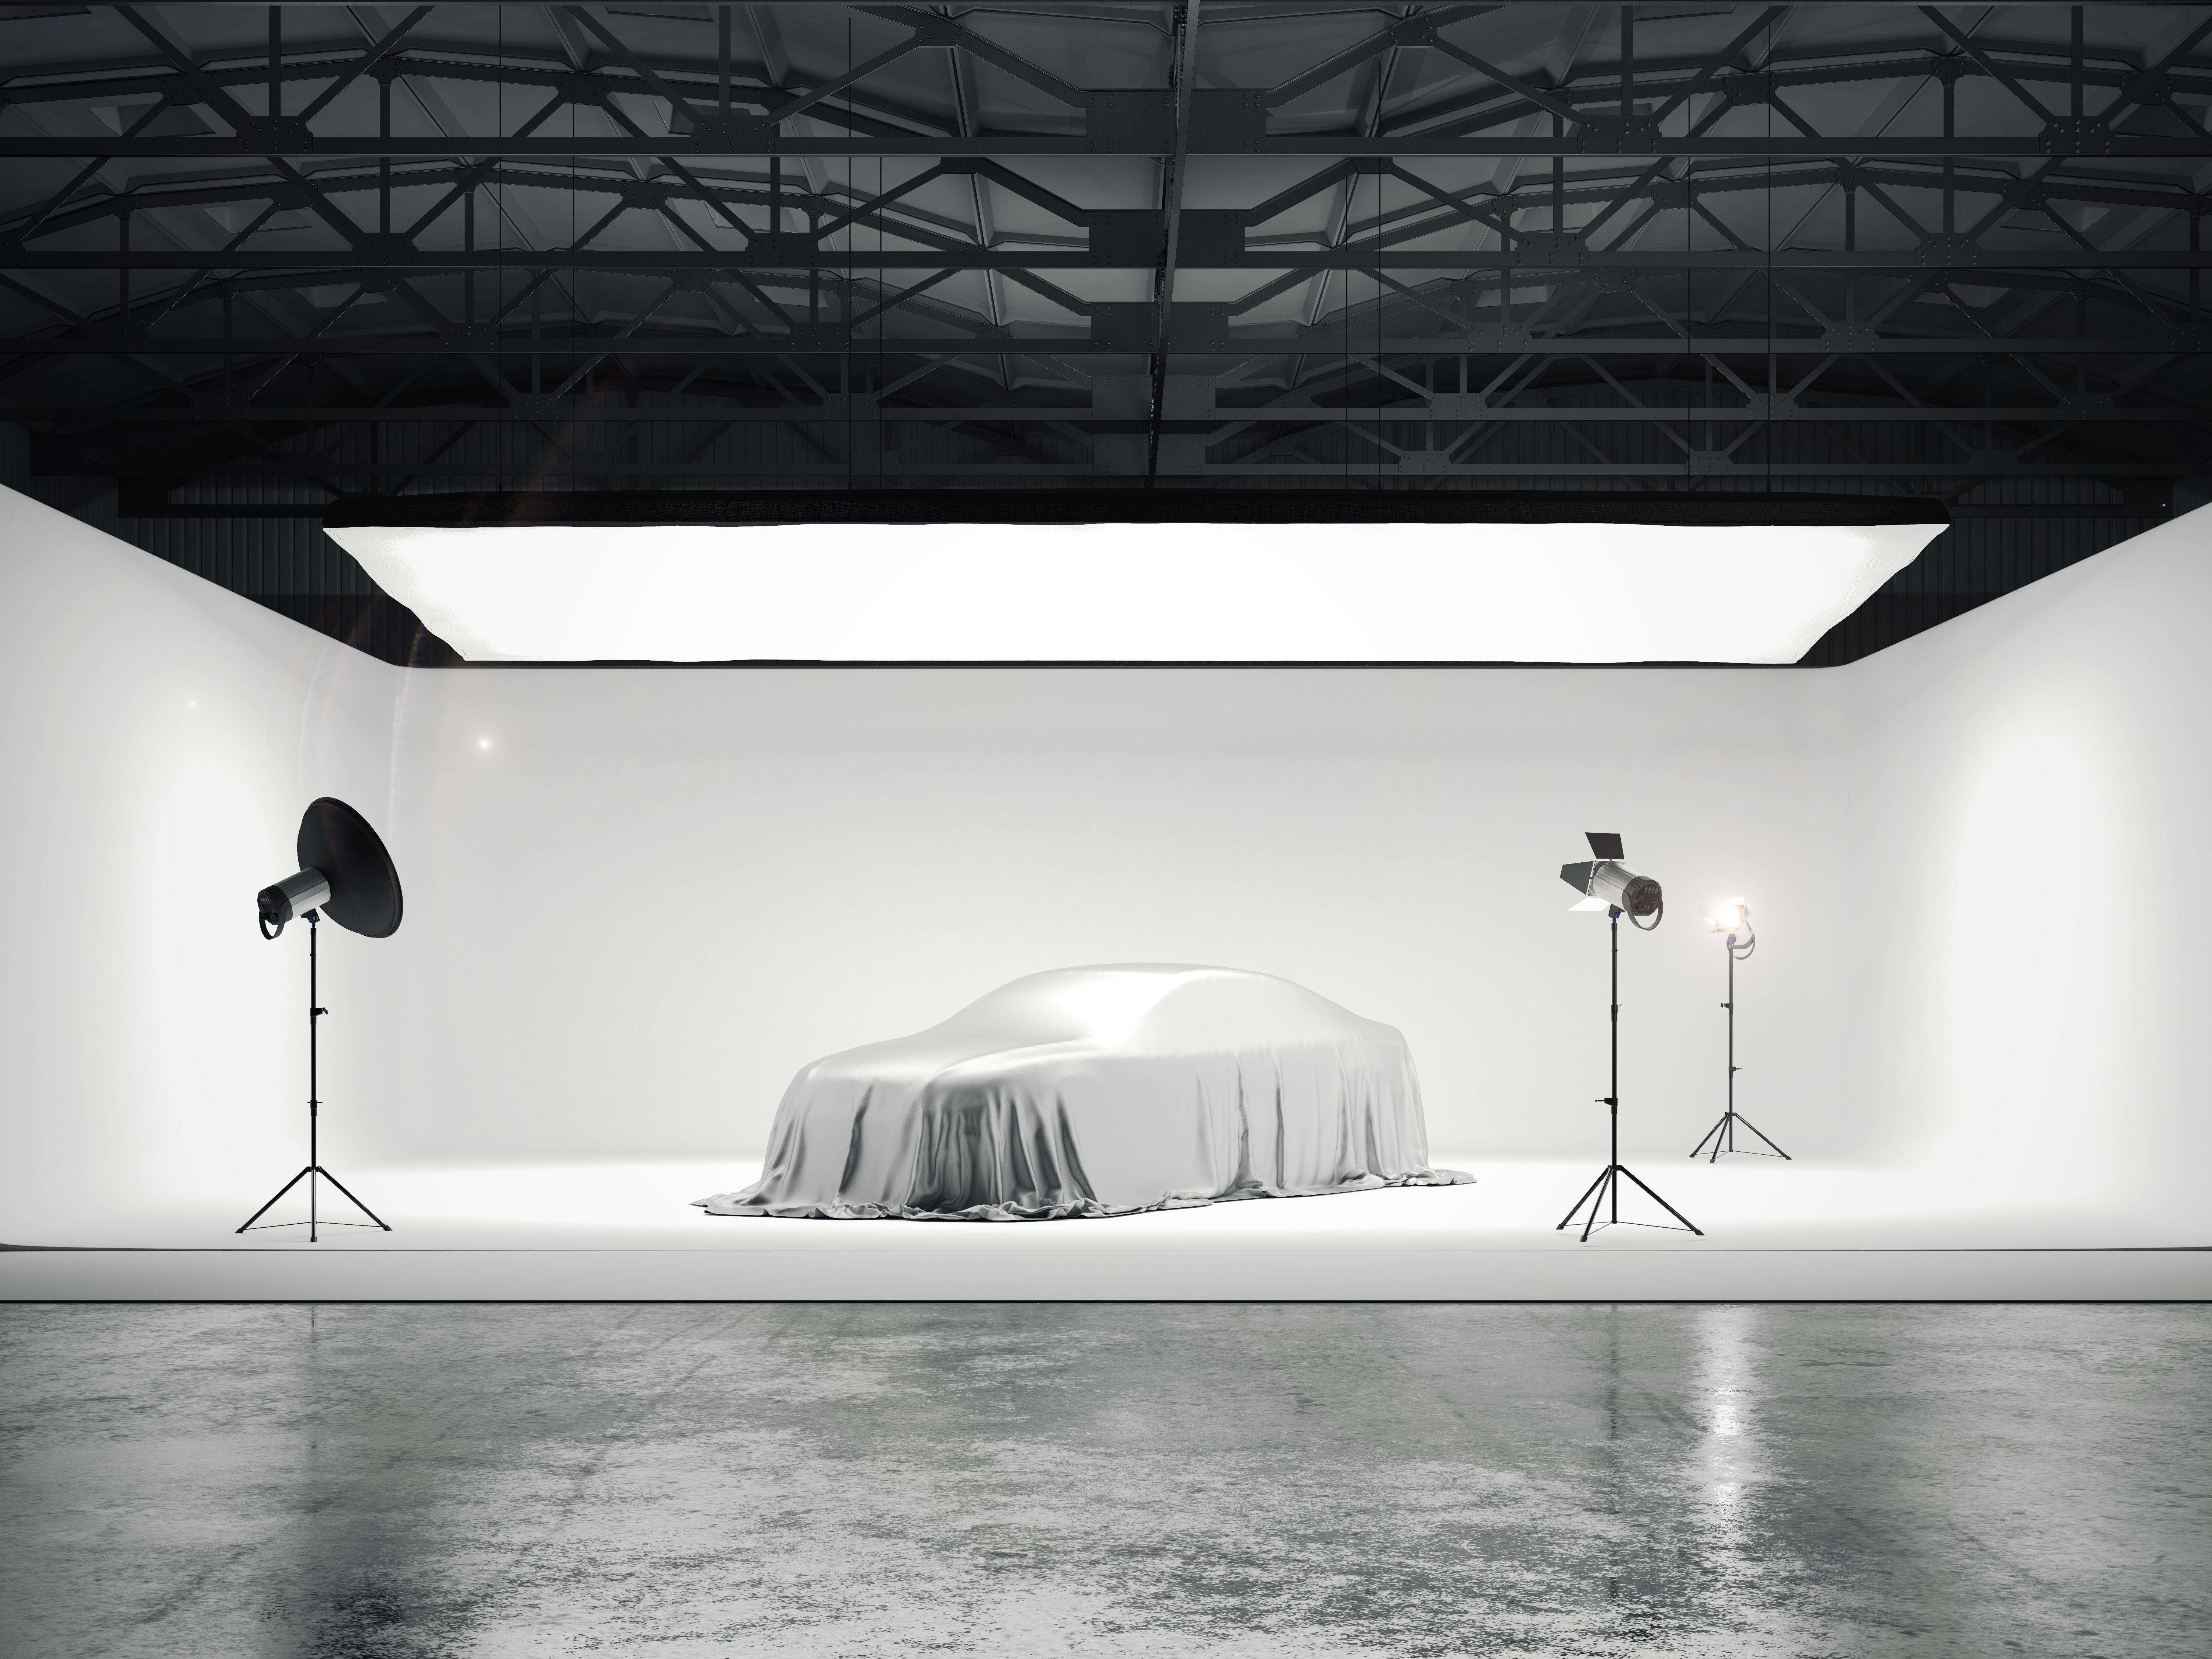 Nagyméretű fotóstúdió egy autóval és több fényforrással